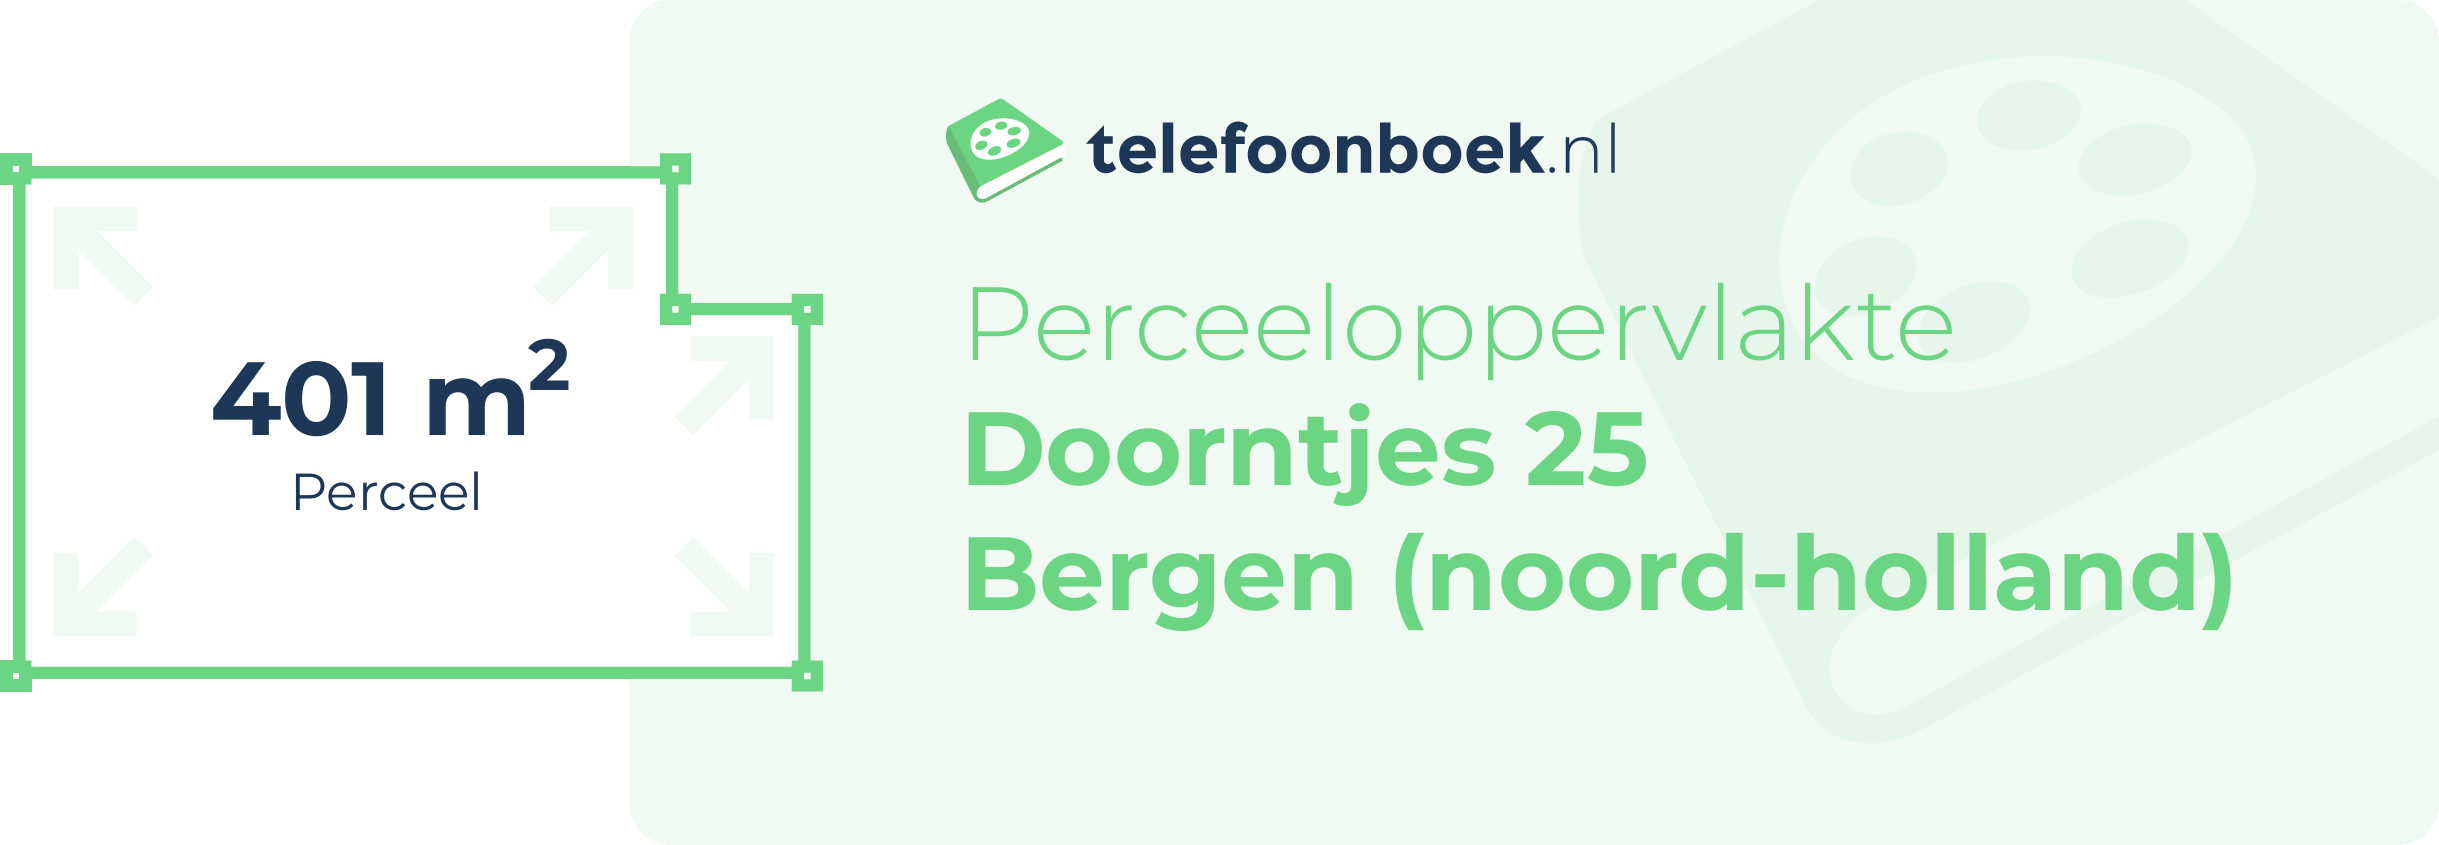 Perceeloppervlakte Doorntjes 25 Bergen (Noord-Holland)